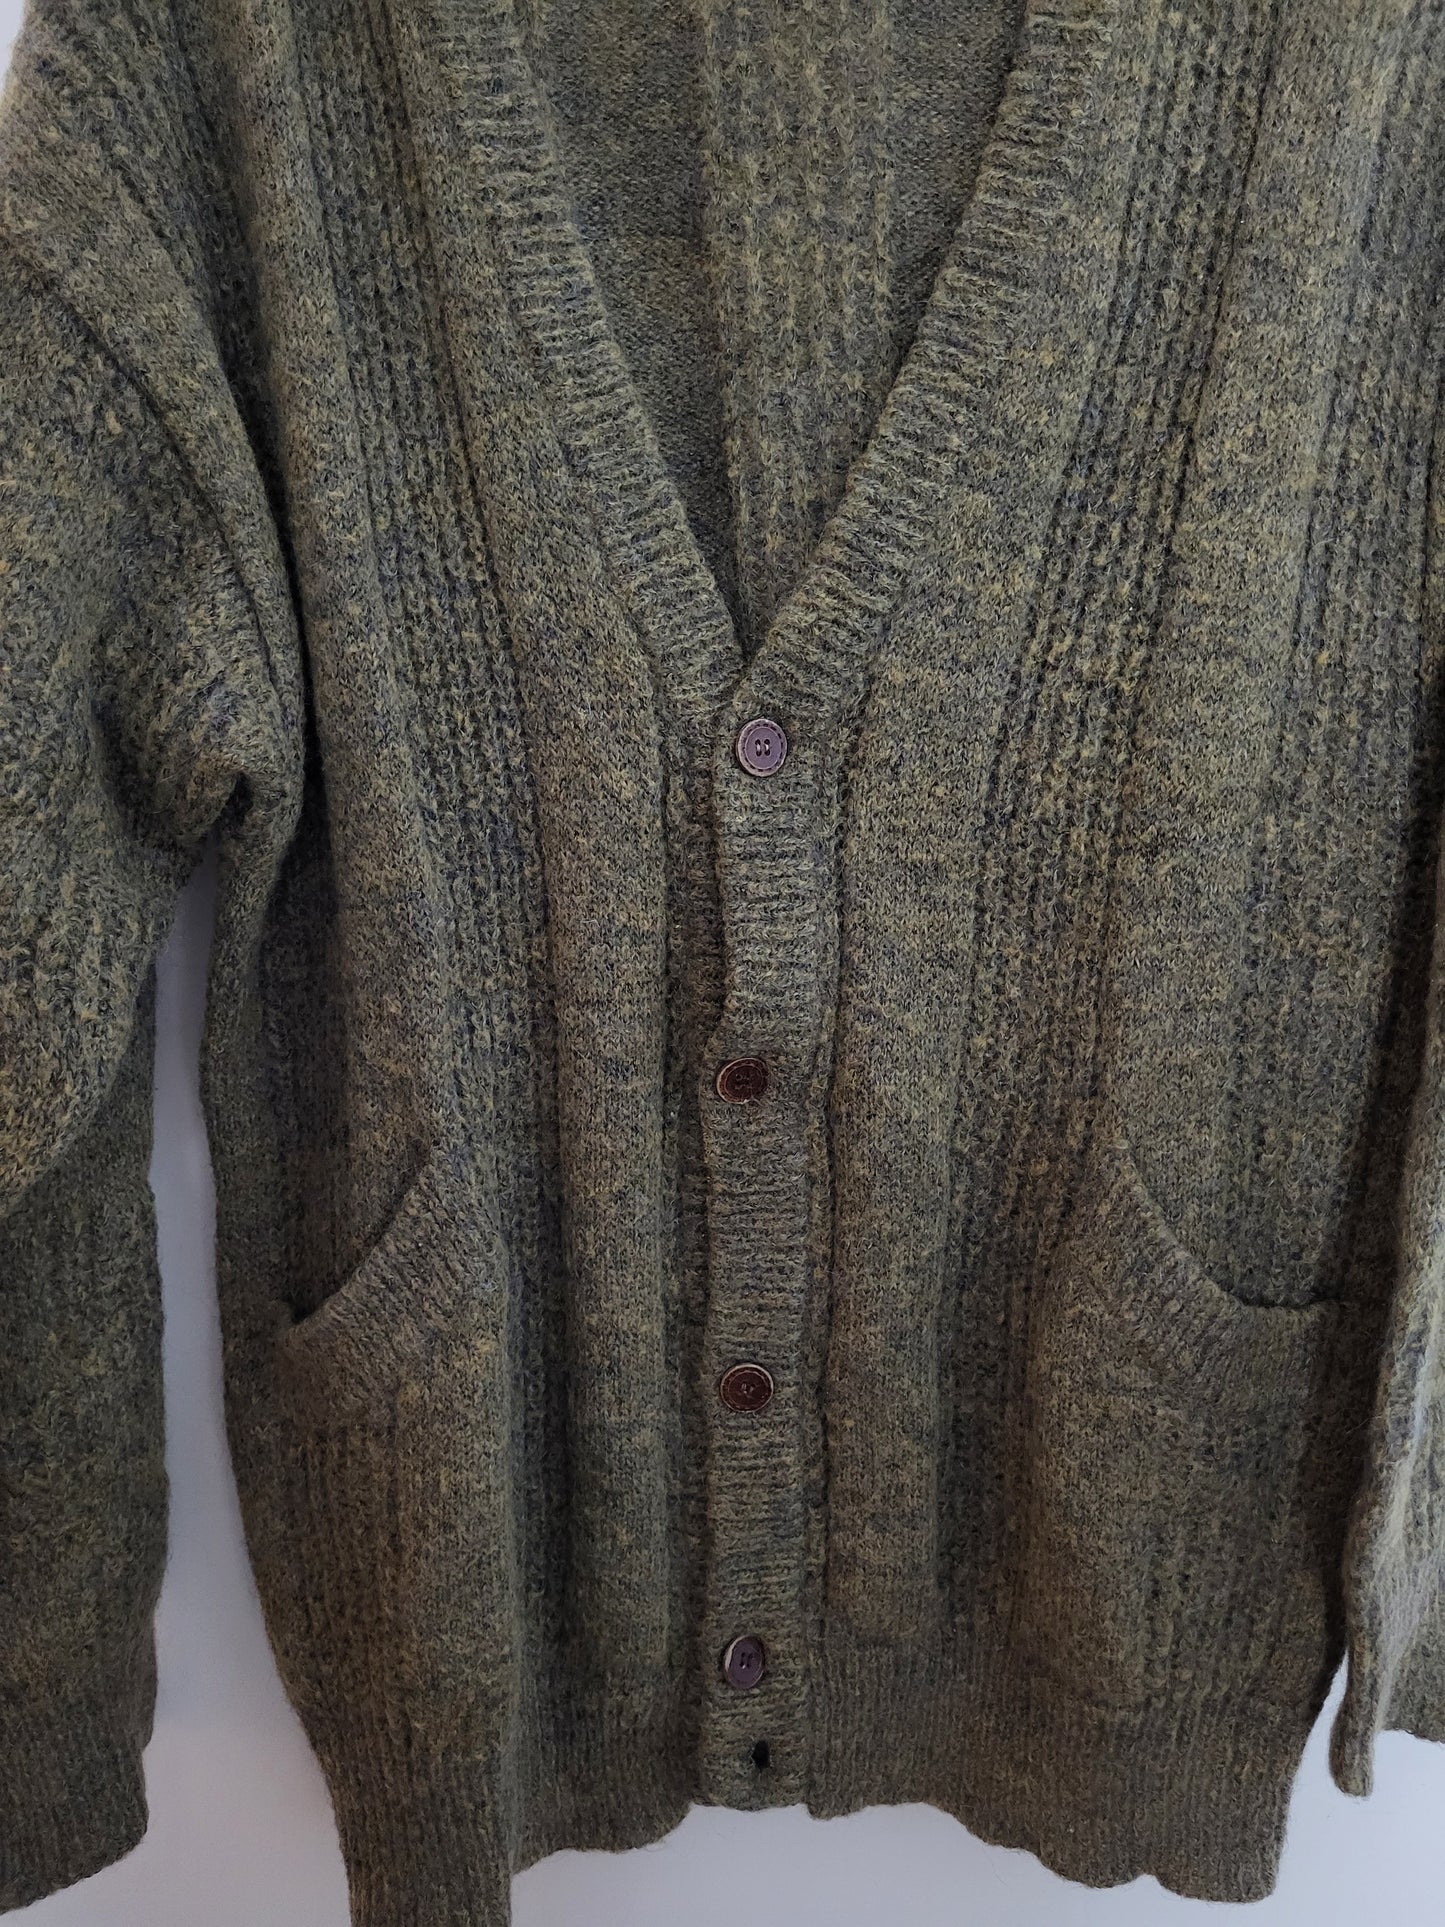 Vintage CUTTY SARK - Pullover/Cardigan - Klassisch - Vintage Italy - Oliv - Herren - L/XL